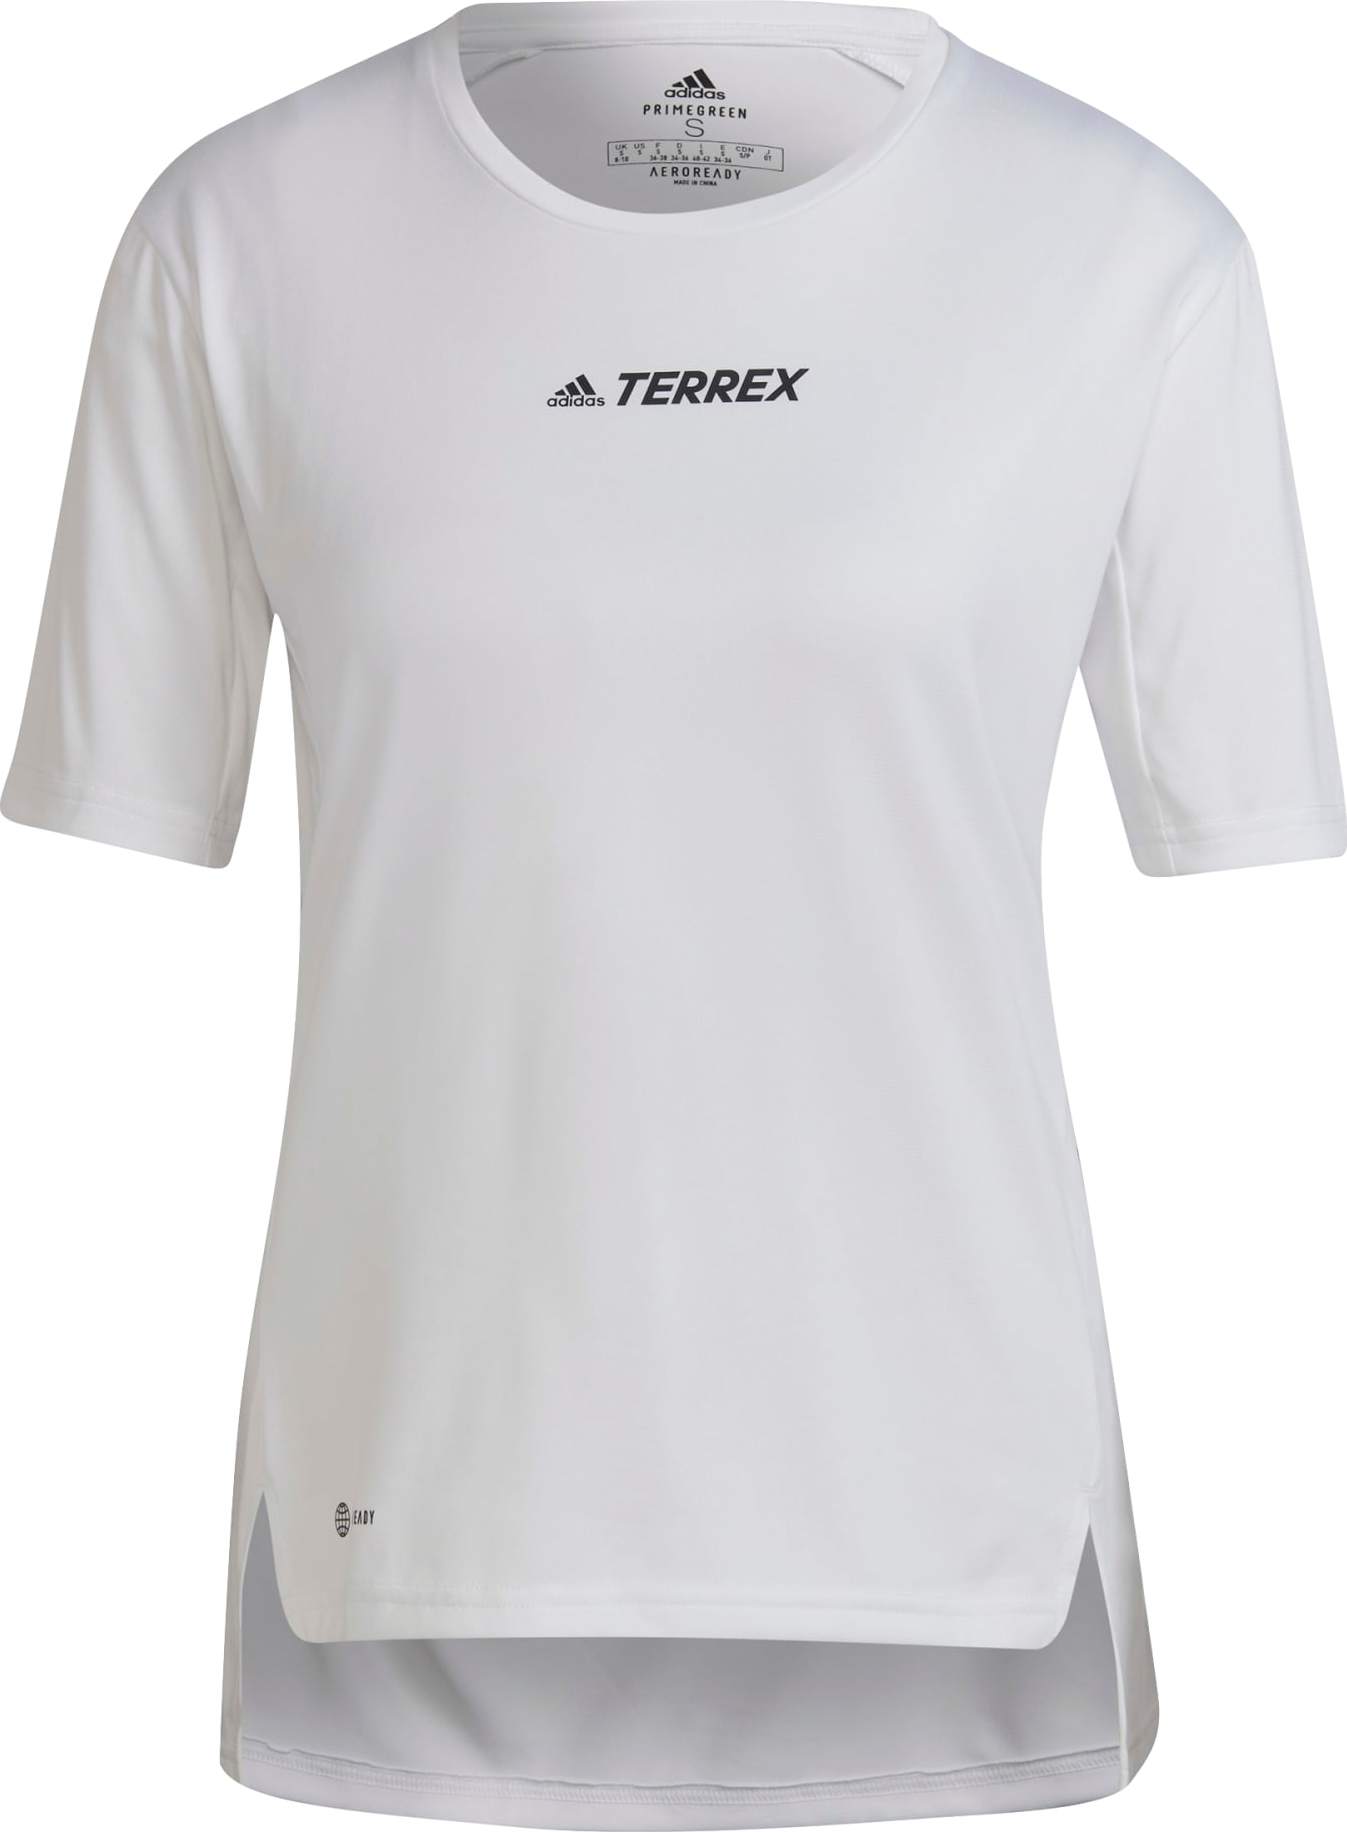 Adidas Adidas Women's Terrex Multi T-Shirt White XS, White